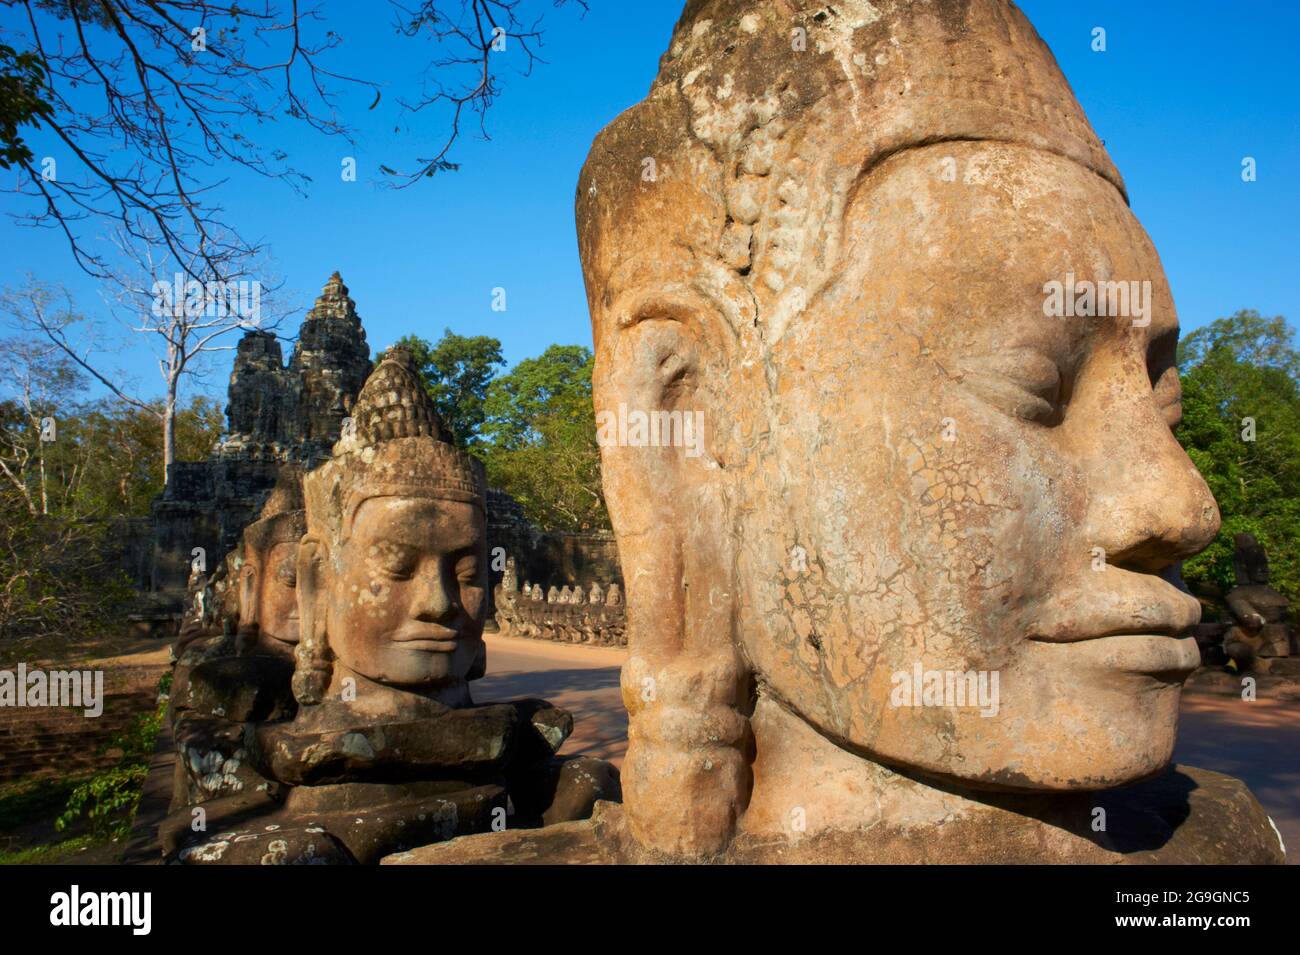 Sudeste de Asia, Camboya, provincia de Siem Reap, sitio de Angkor, Patrimonio de la Humanidad de la Unesco desde 1992, Ciudad antigua de Angkor Thom, Puerta de entrada sur, Estatua de Foto de stock